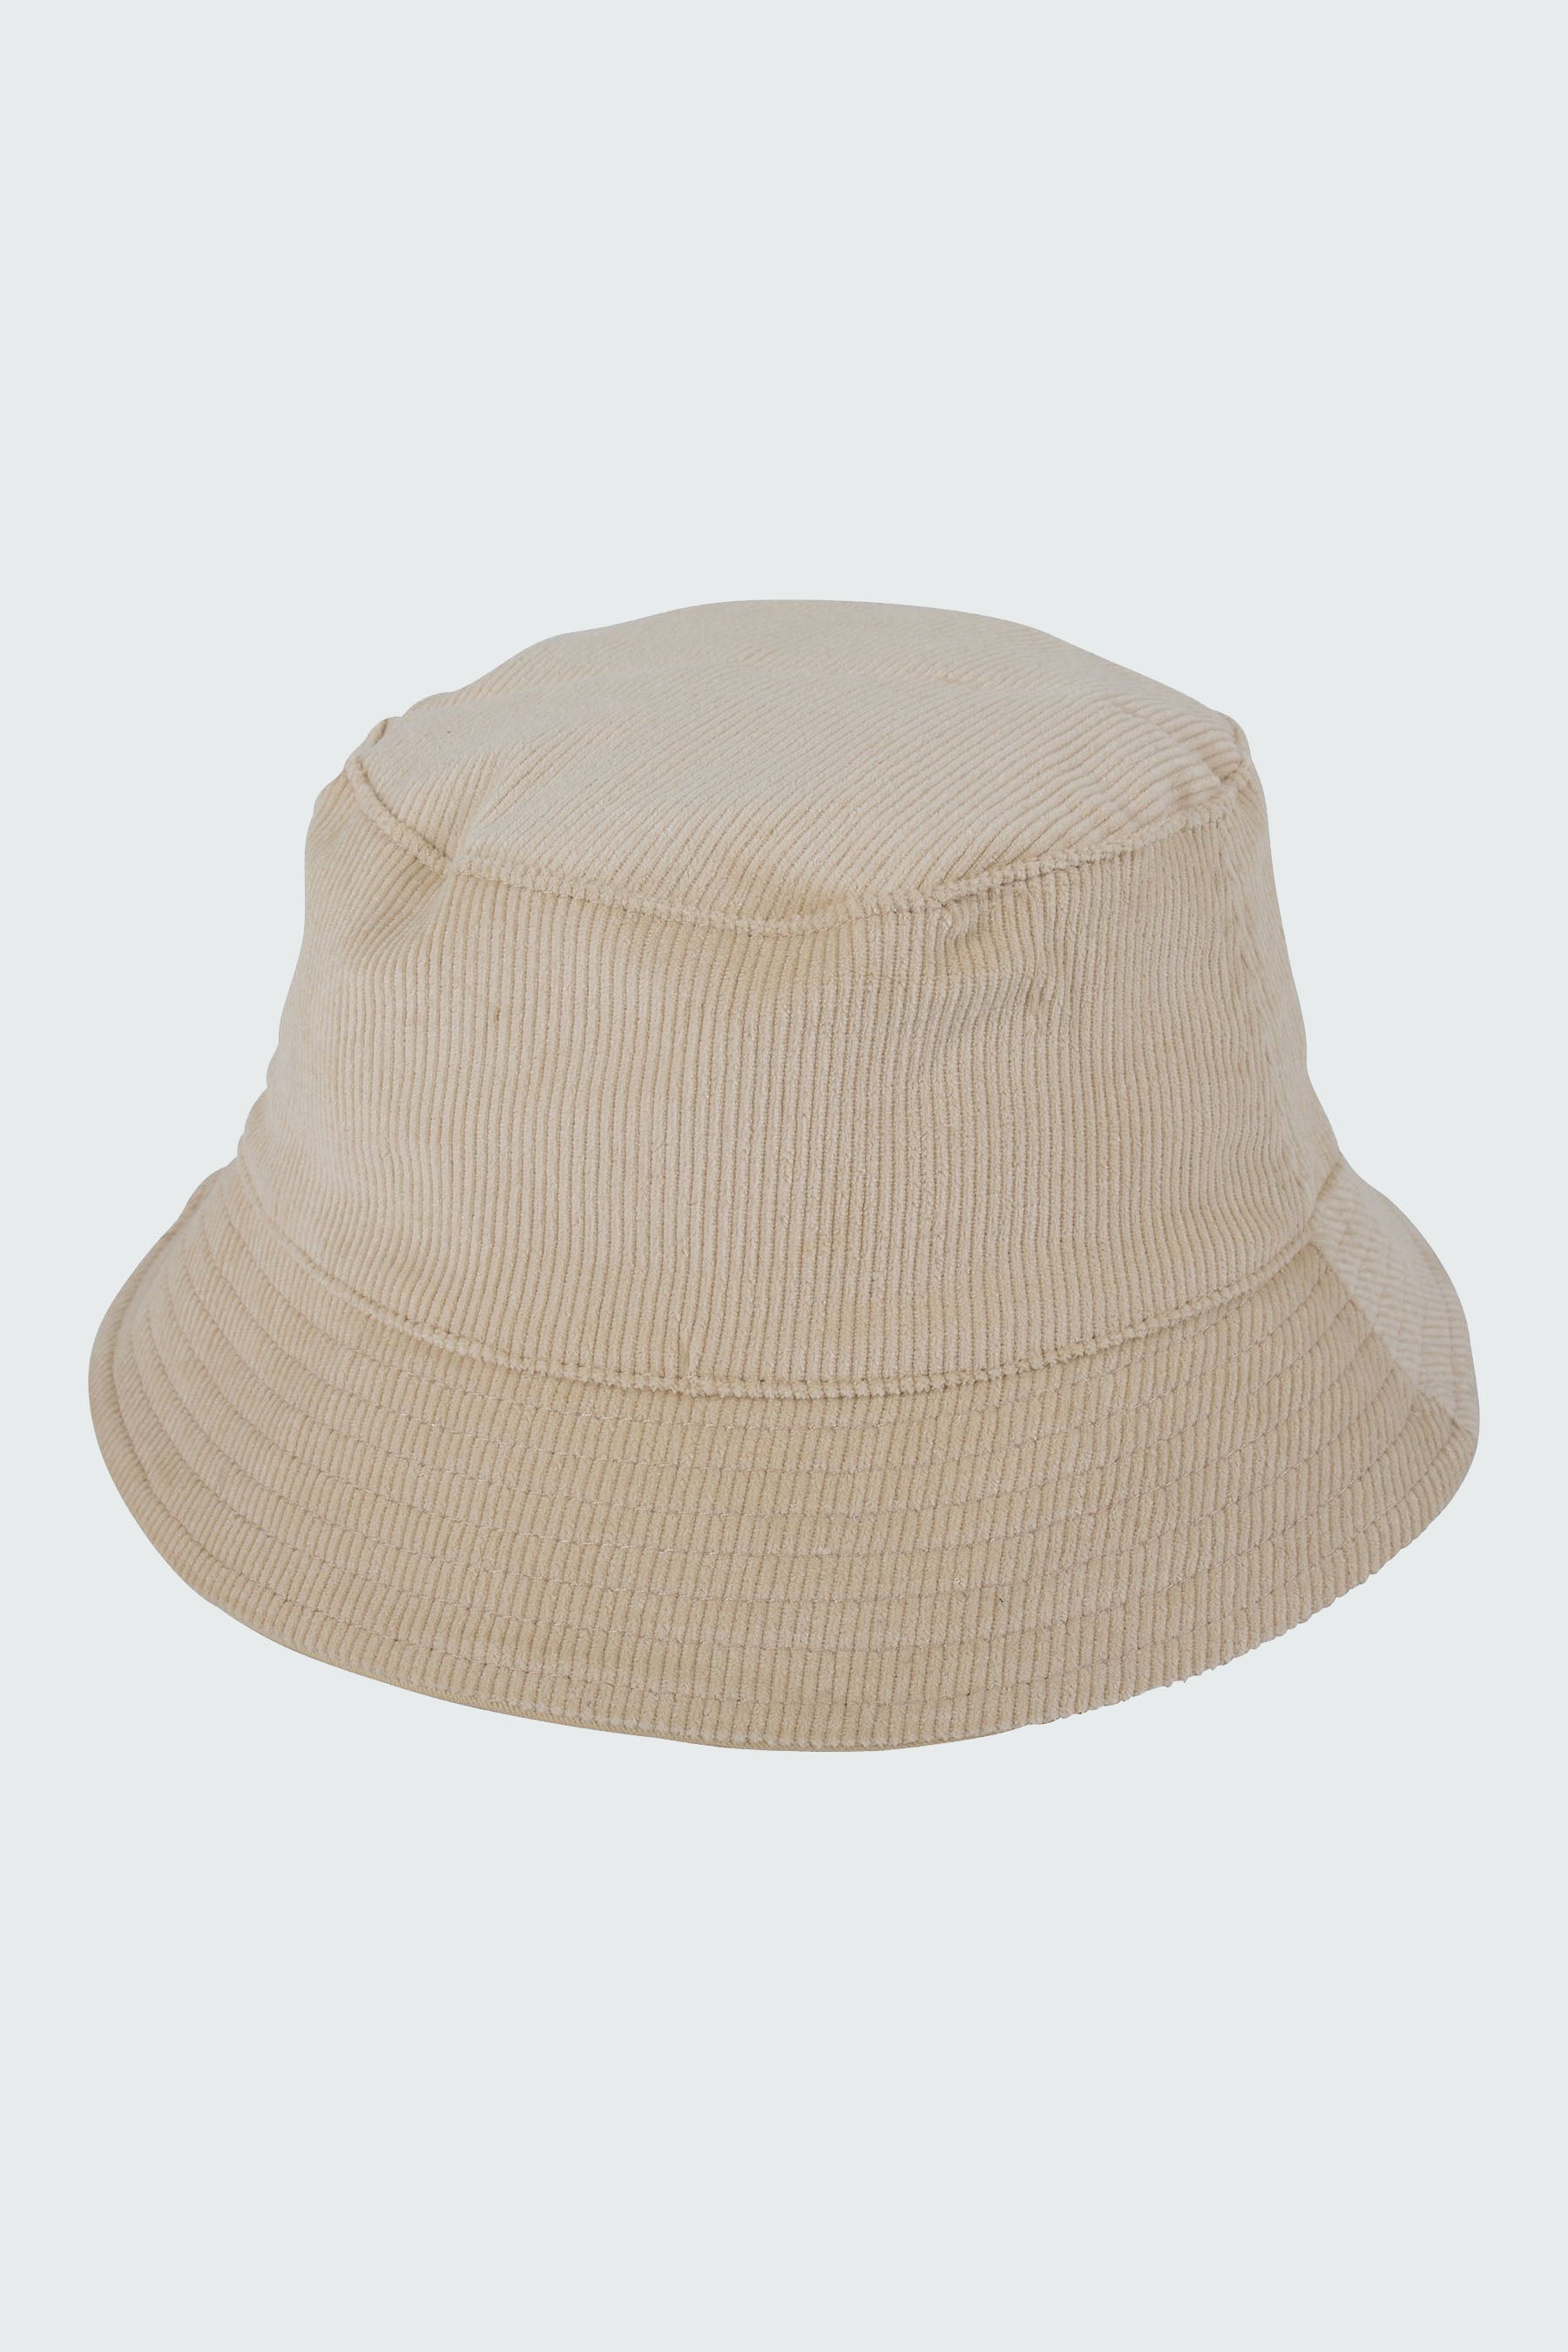 Jetpilot Corduroy Ladies Bucket Hat - Tan